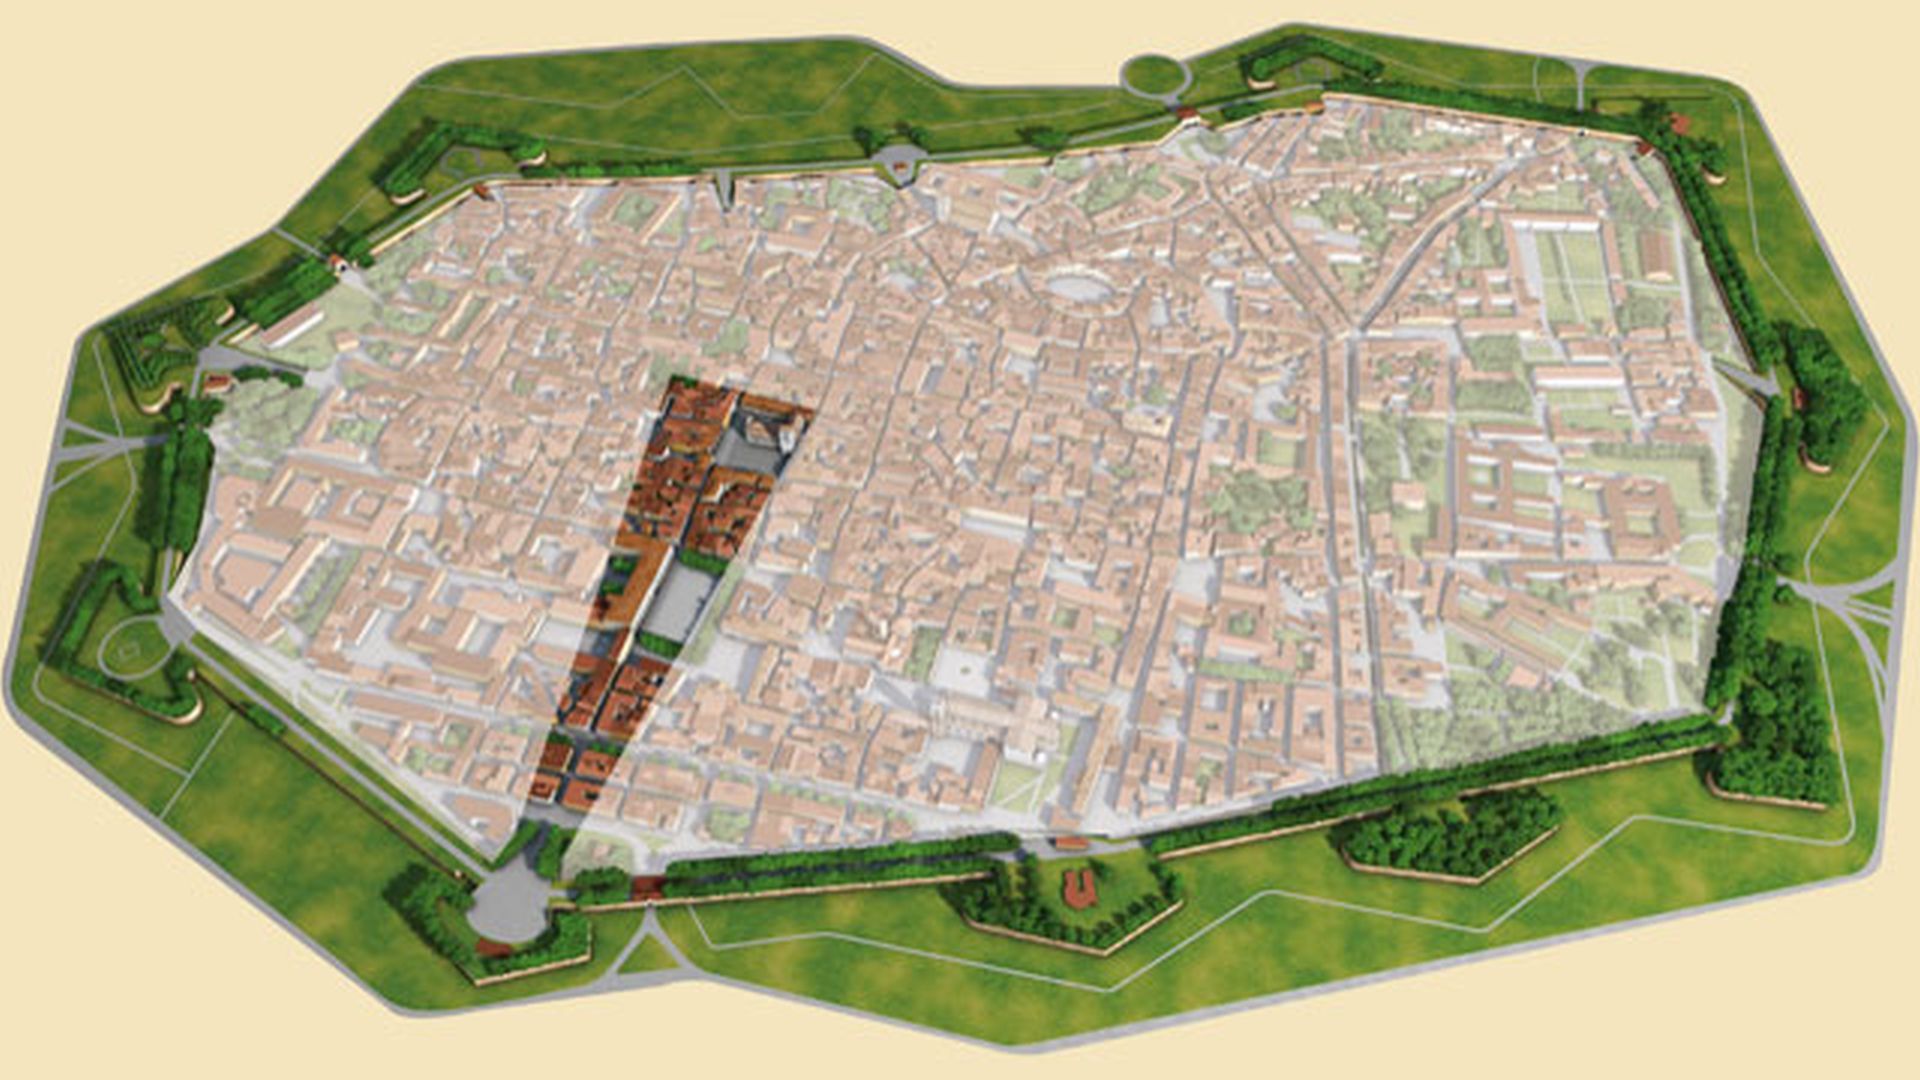 mappa di lucca con evidenza del centro storico